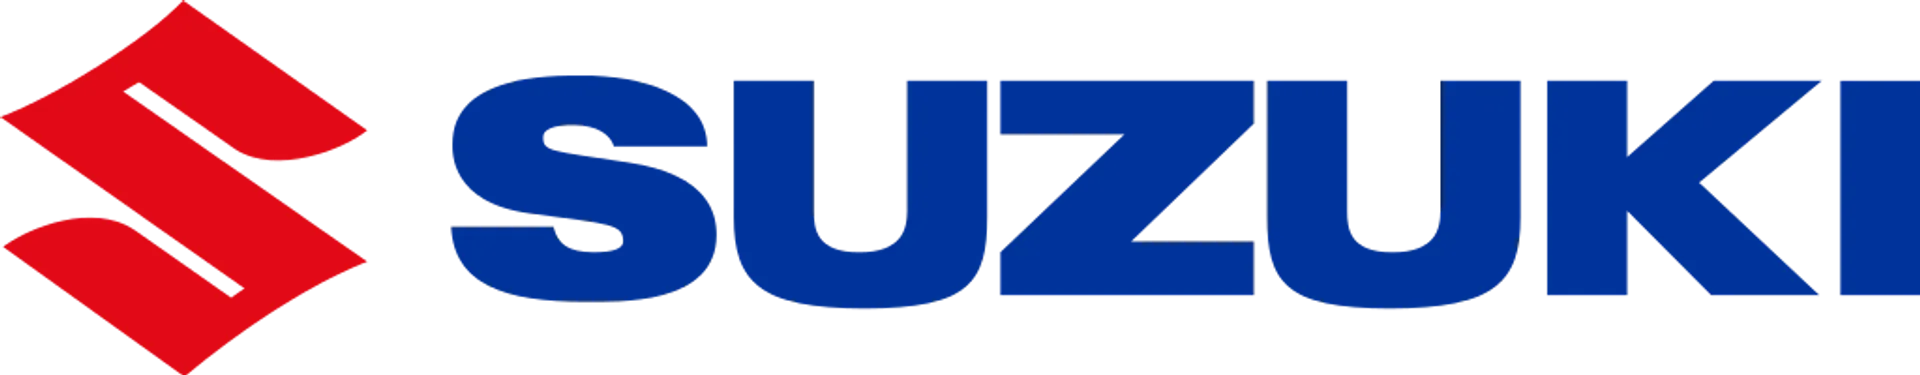 SUZUKI logo de folhetos